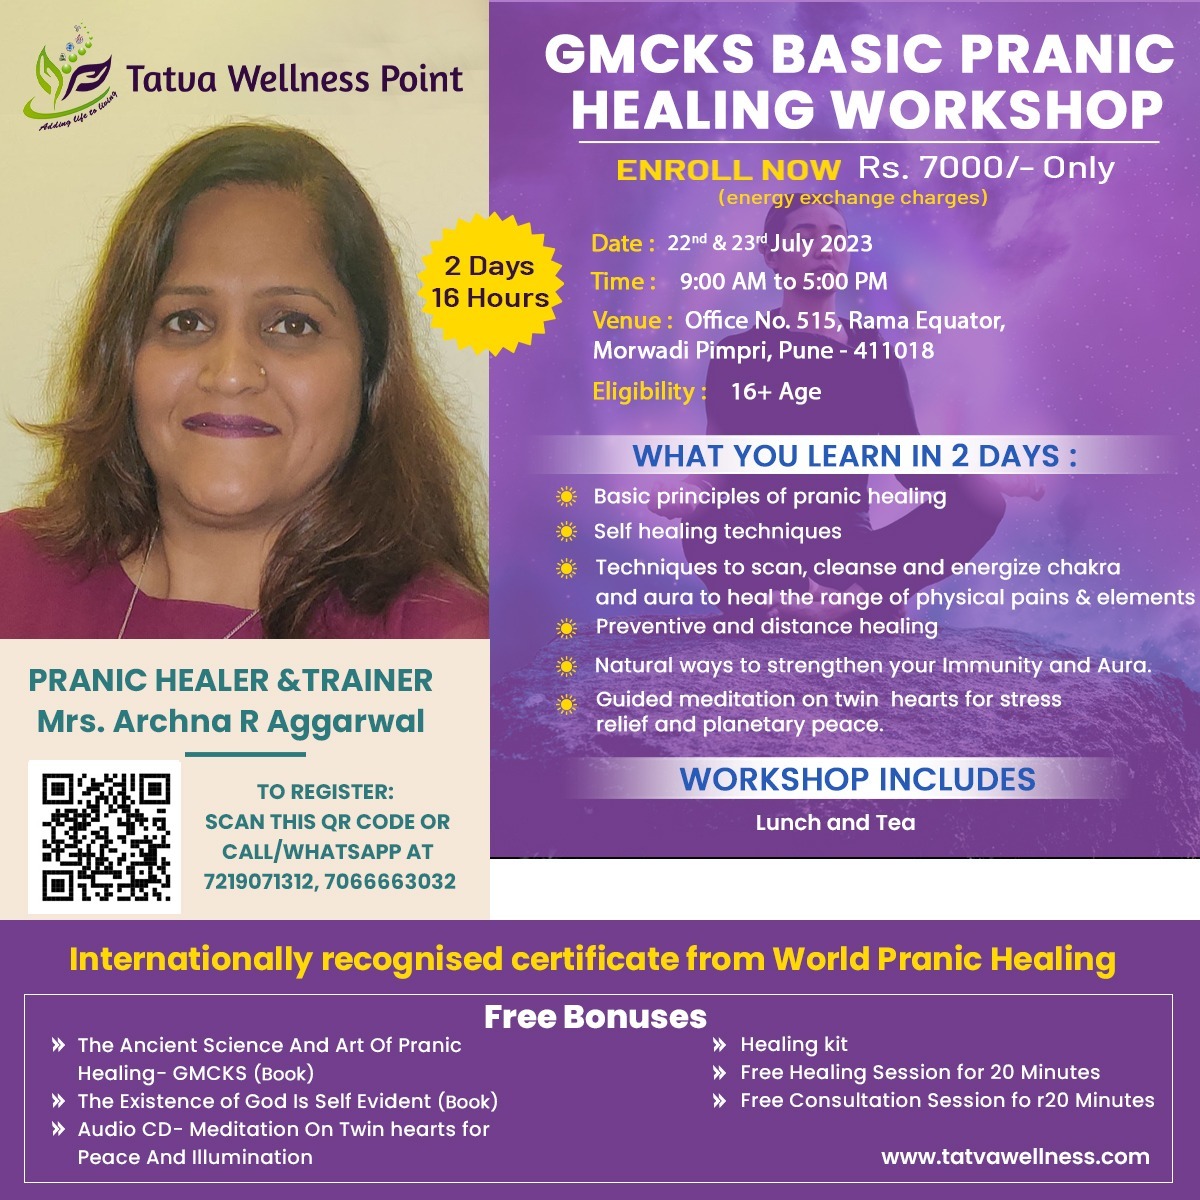 GMCKS Basic Pranic Healing Workshop